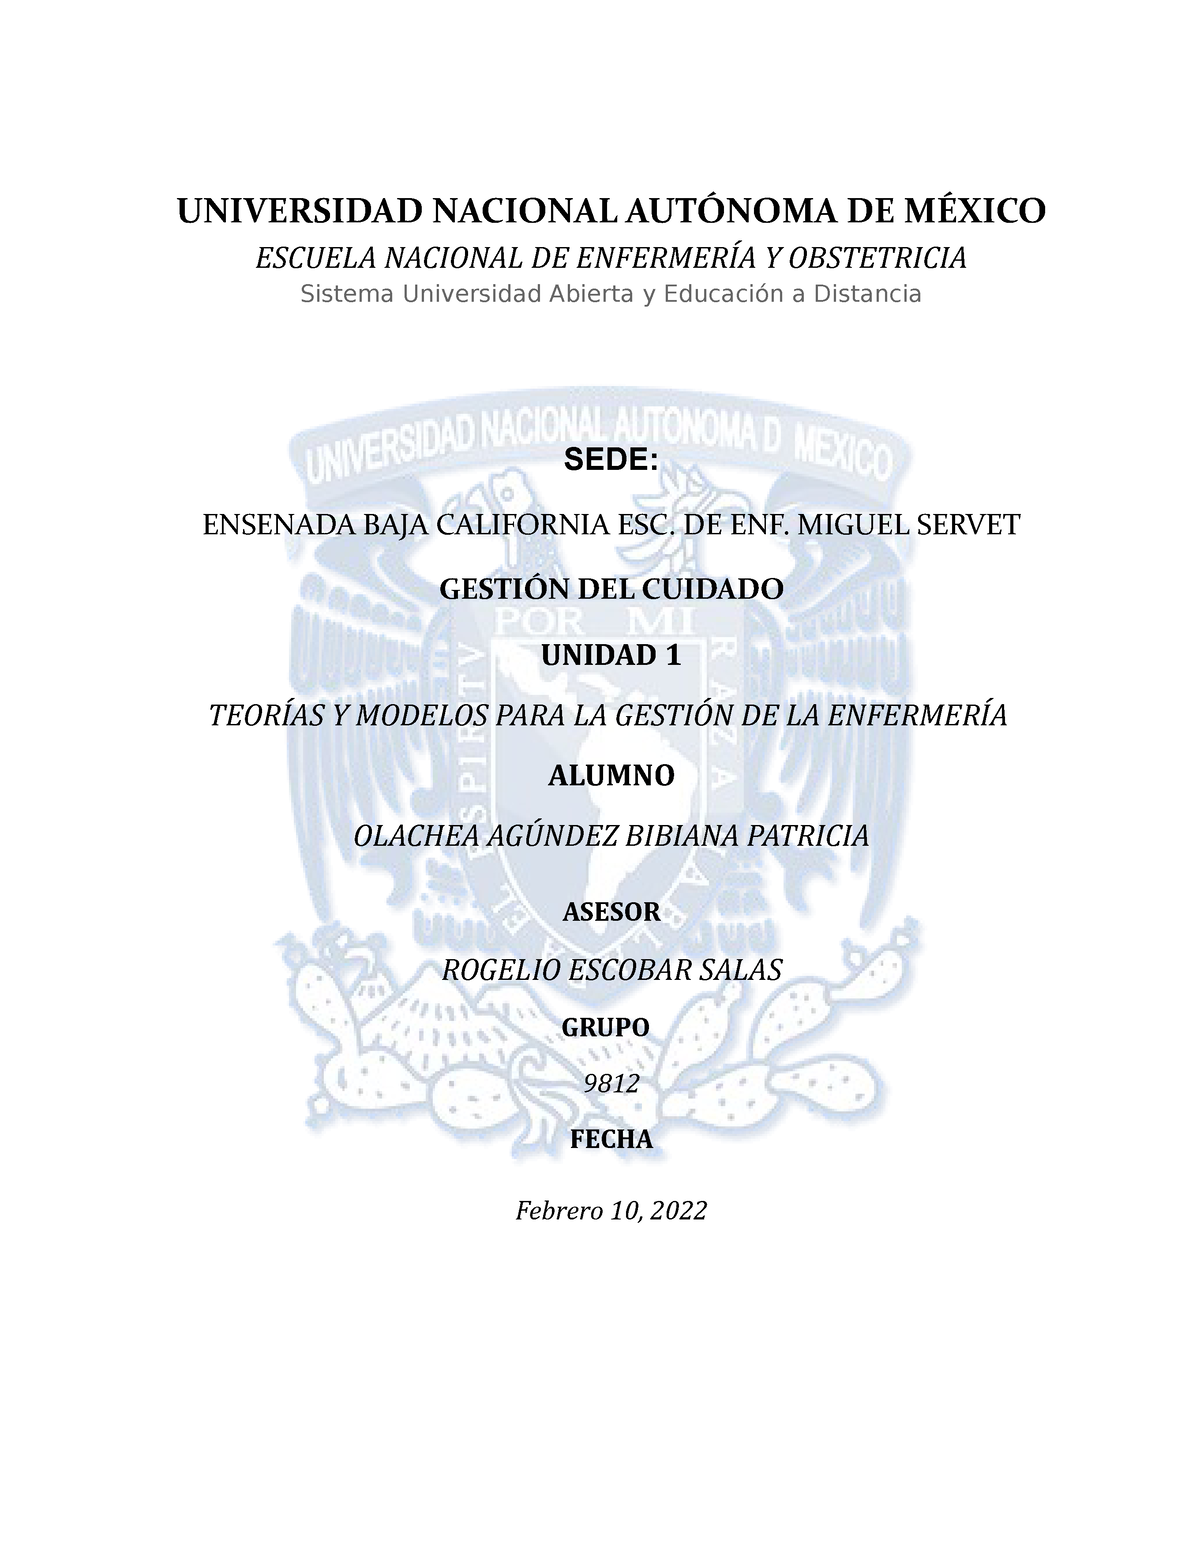 Teorías y modelos para la gestión de enfermería - UNIVERSIDAD NACIONAL  AUTÓNOMA DE MÉXICO ESCUELA - Studocu